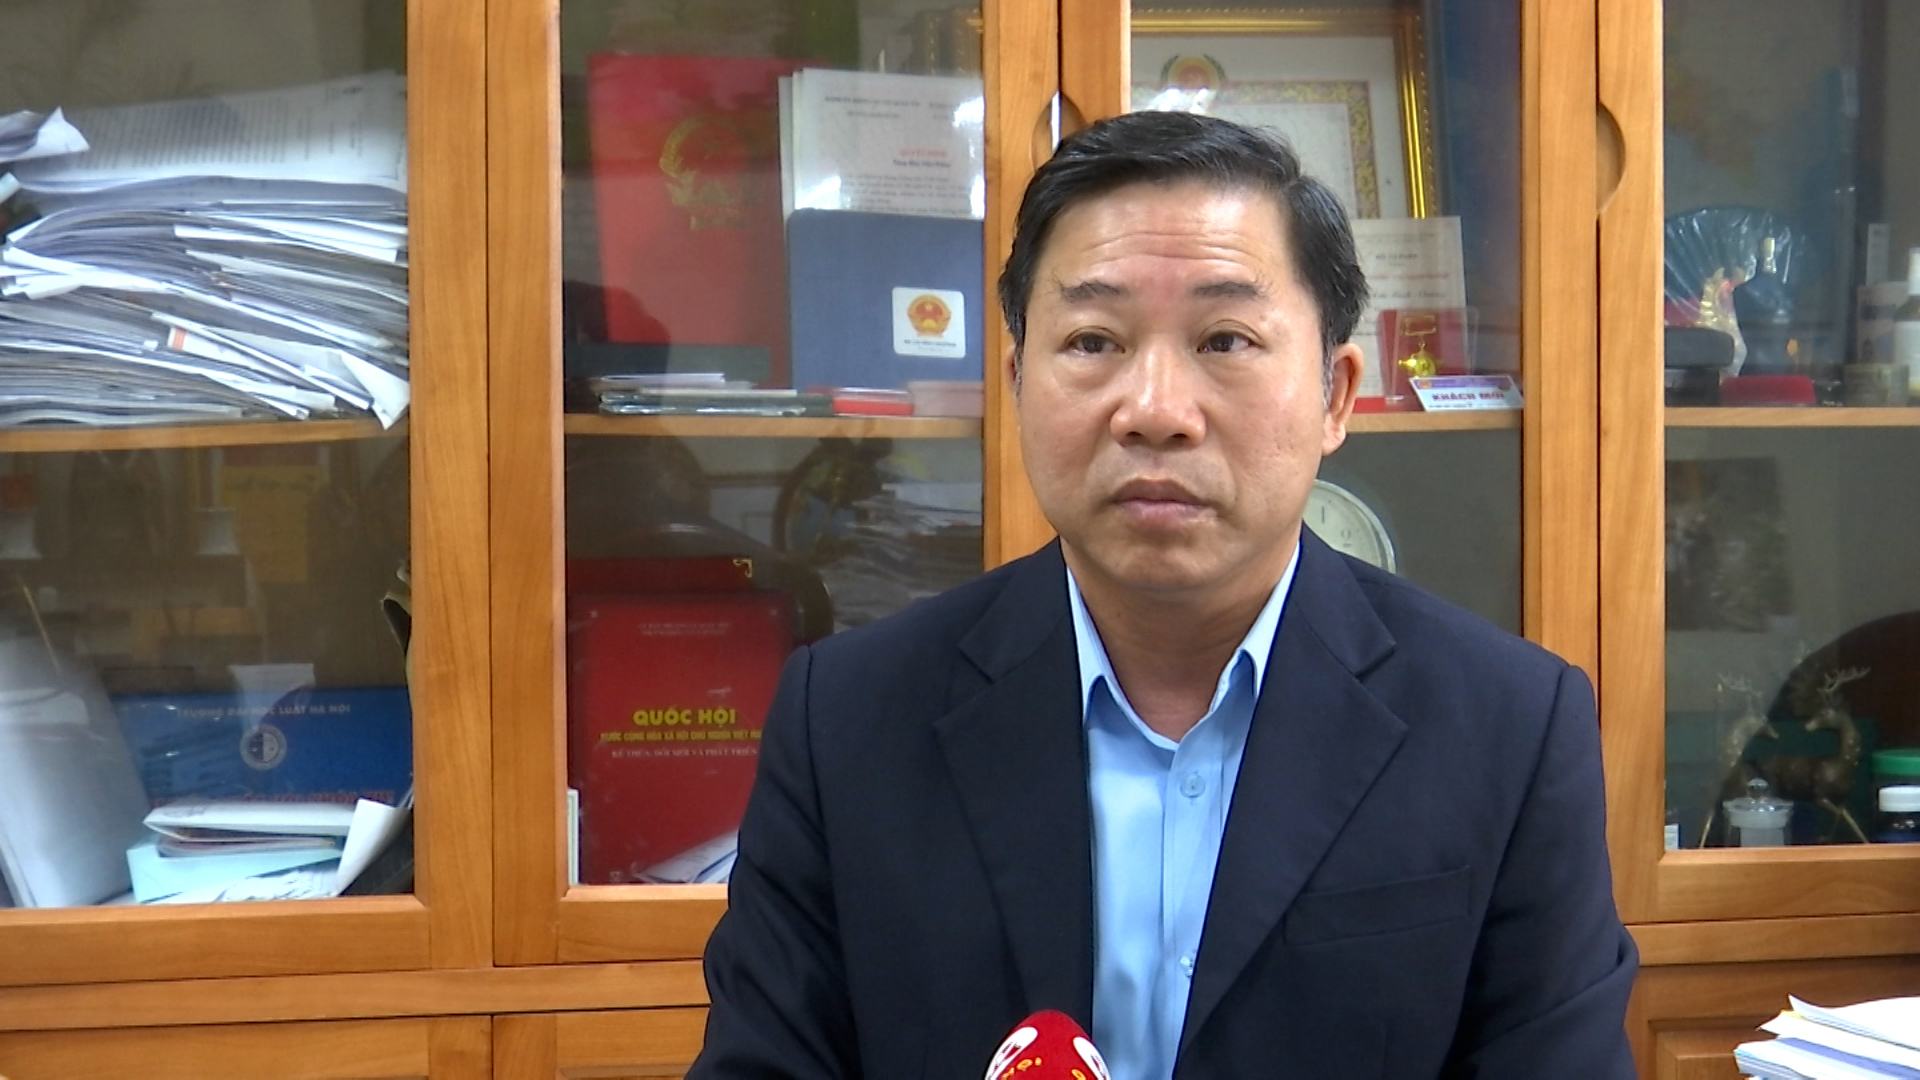 TS.Lưu Bình Nhưỡng: Không luật nào cho phép quản lý nhà chung cư được khóa bánh xe của người khác